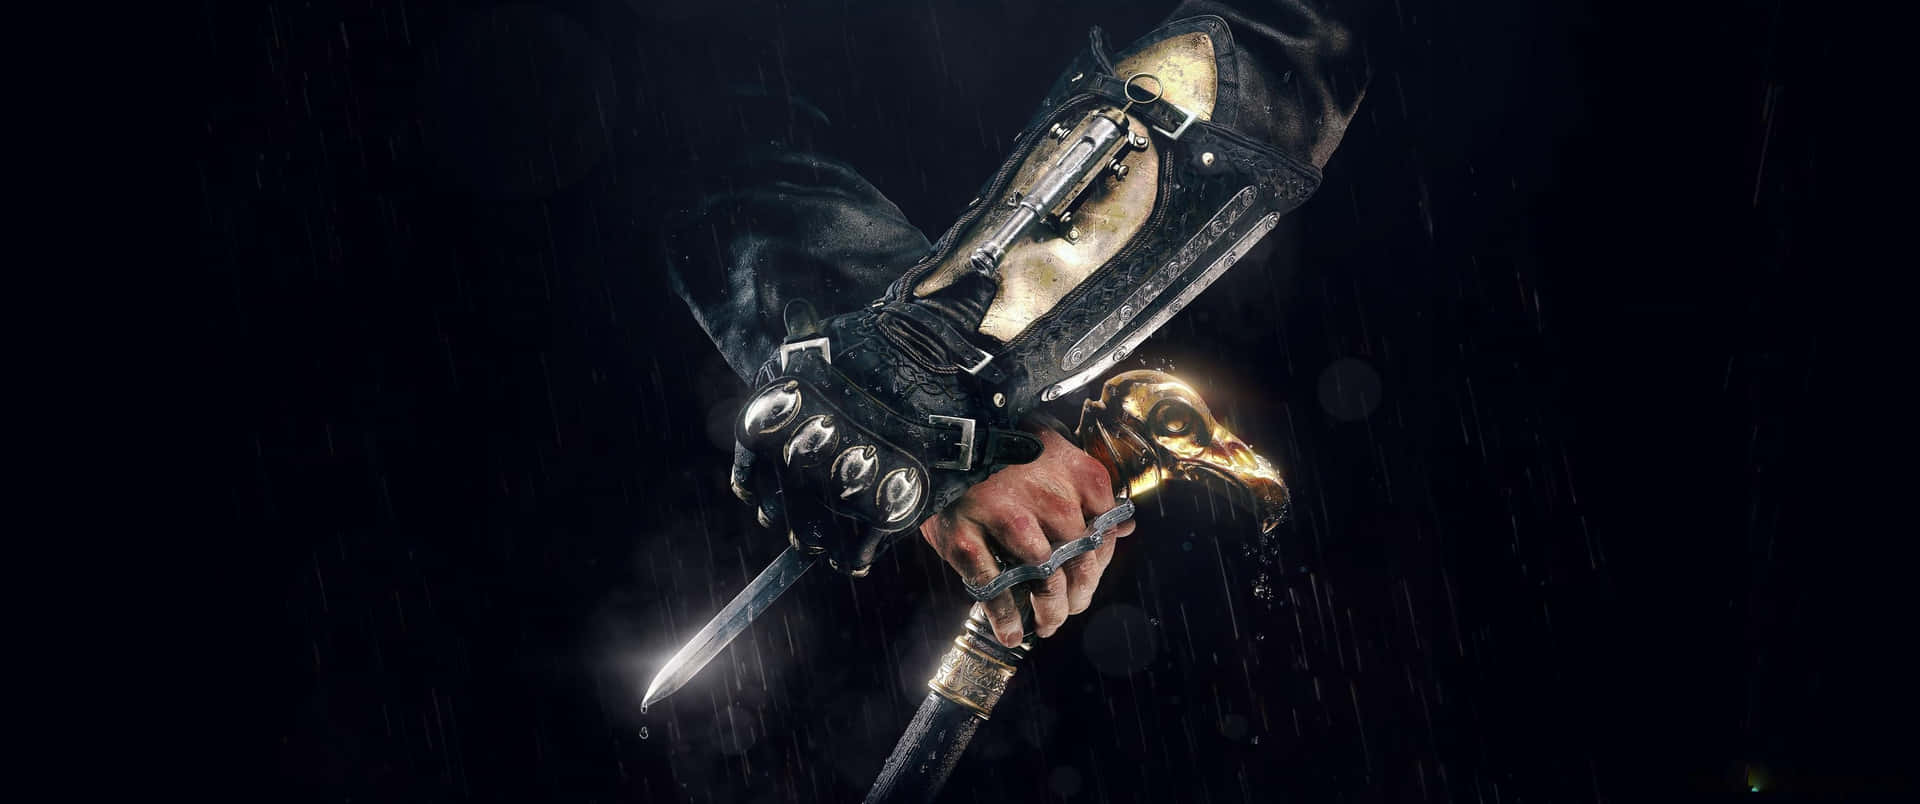 Papelde Parede Assassins's Creed Odyssey Com Hidden Blade E Cane Em Resolução 3440x1440p.